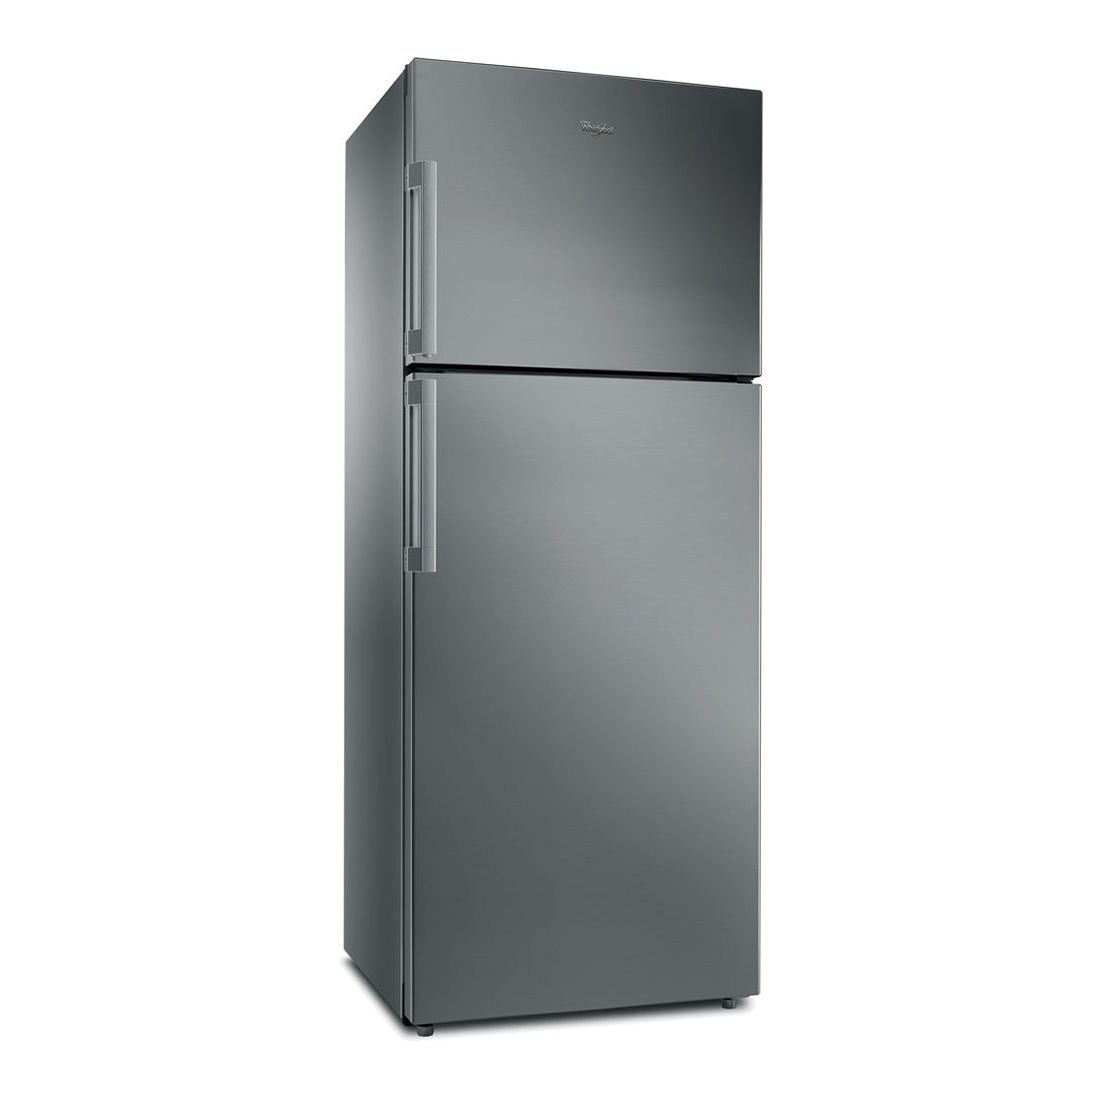 Refrigerateur Whirlpool TTNF 8111 OX